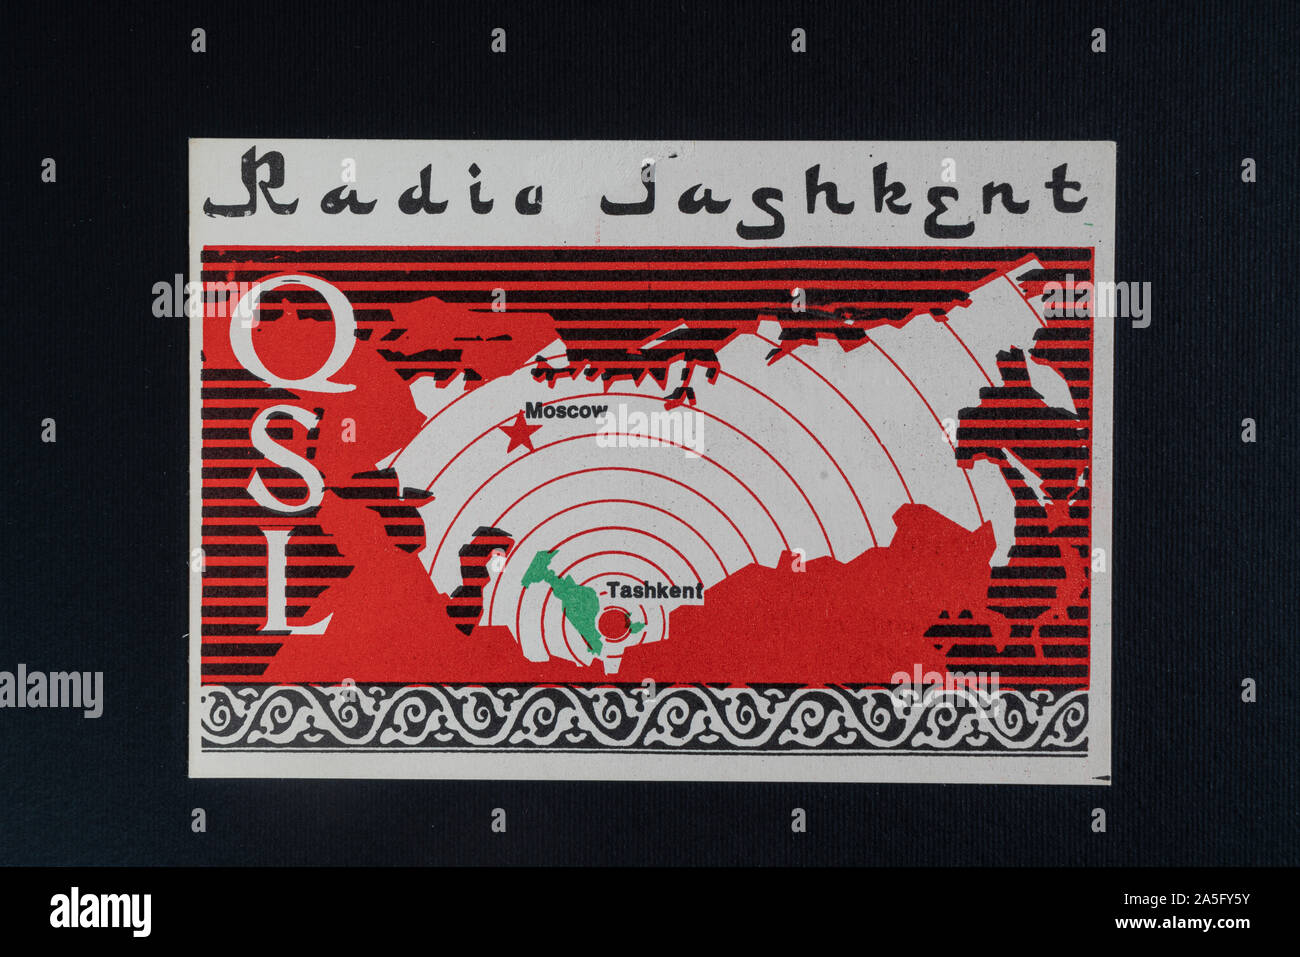 Une carte QSL de Radio station de Tachkent de l'ex-URSS Banque D'Images